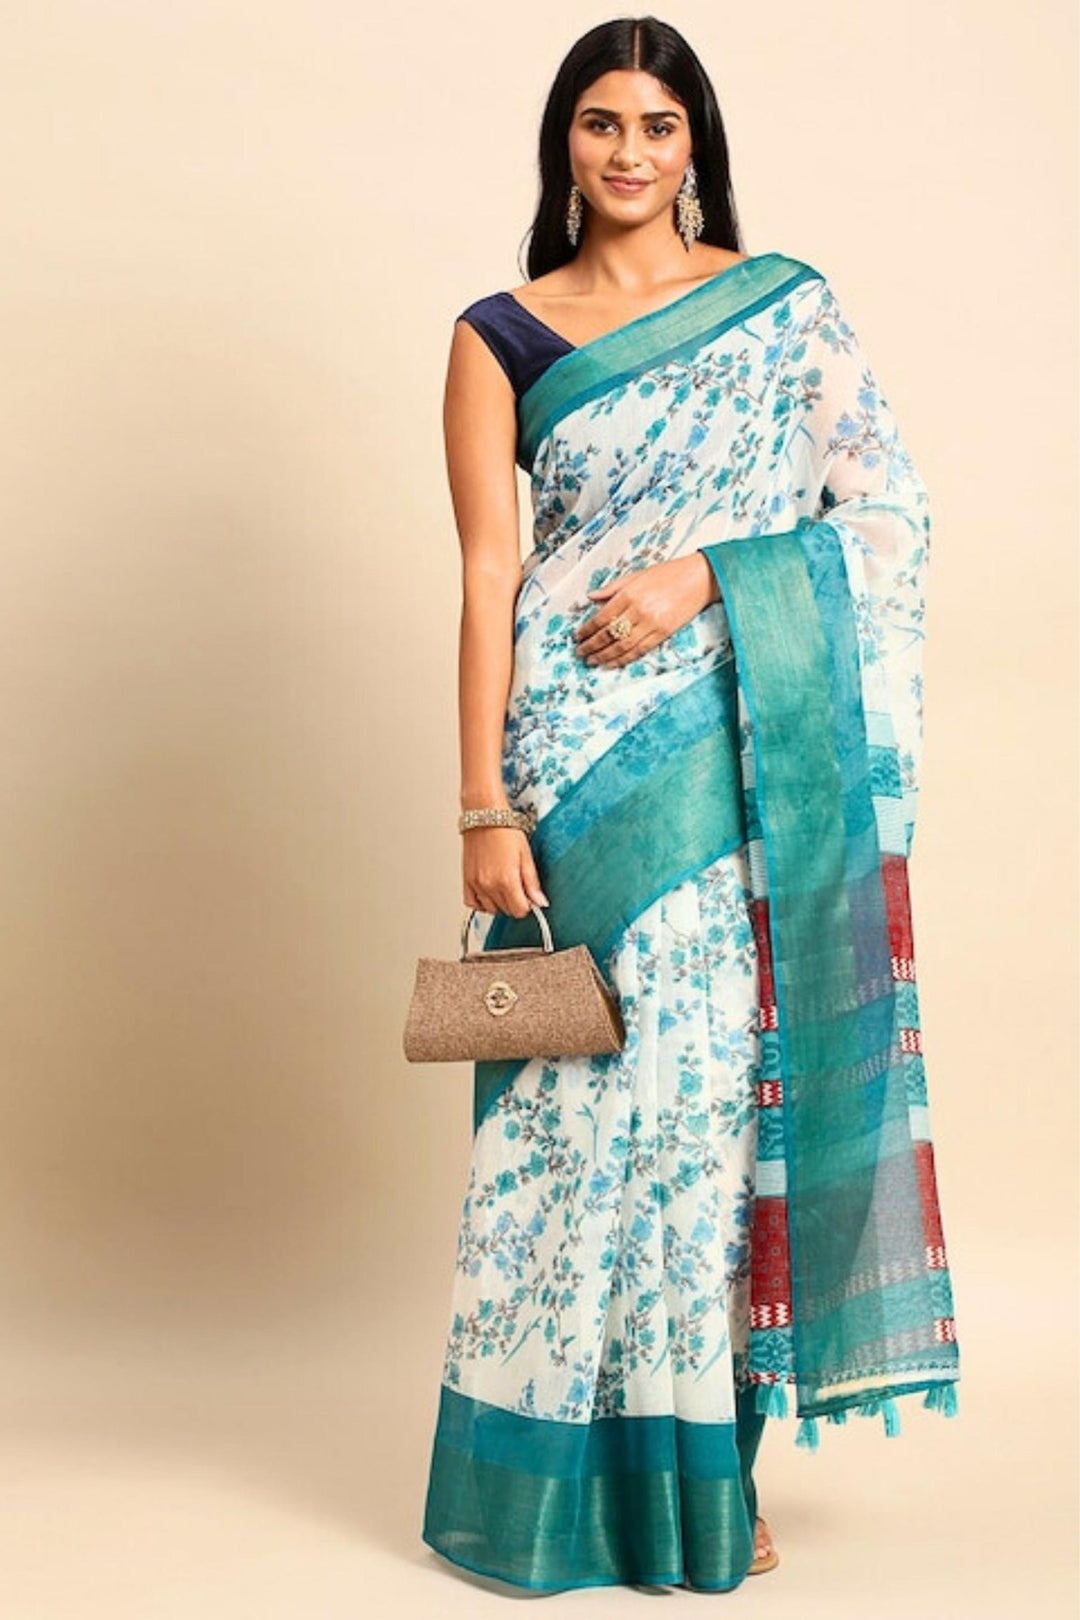 white saree with blue border - white cotton saree with blue border - white saree with sky blue border 